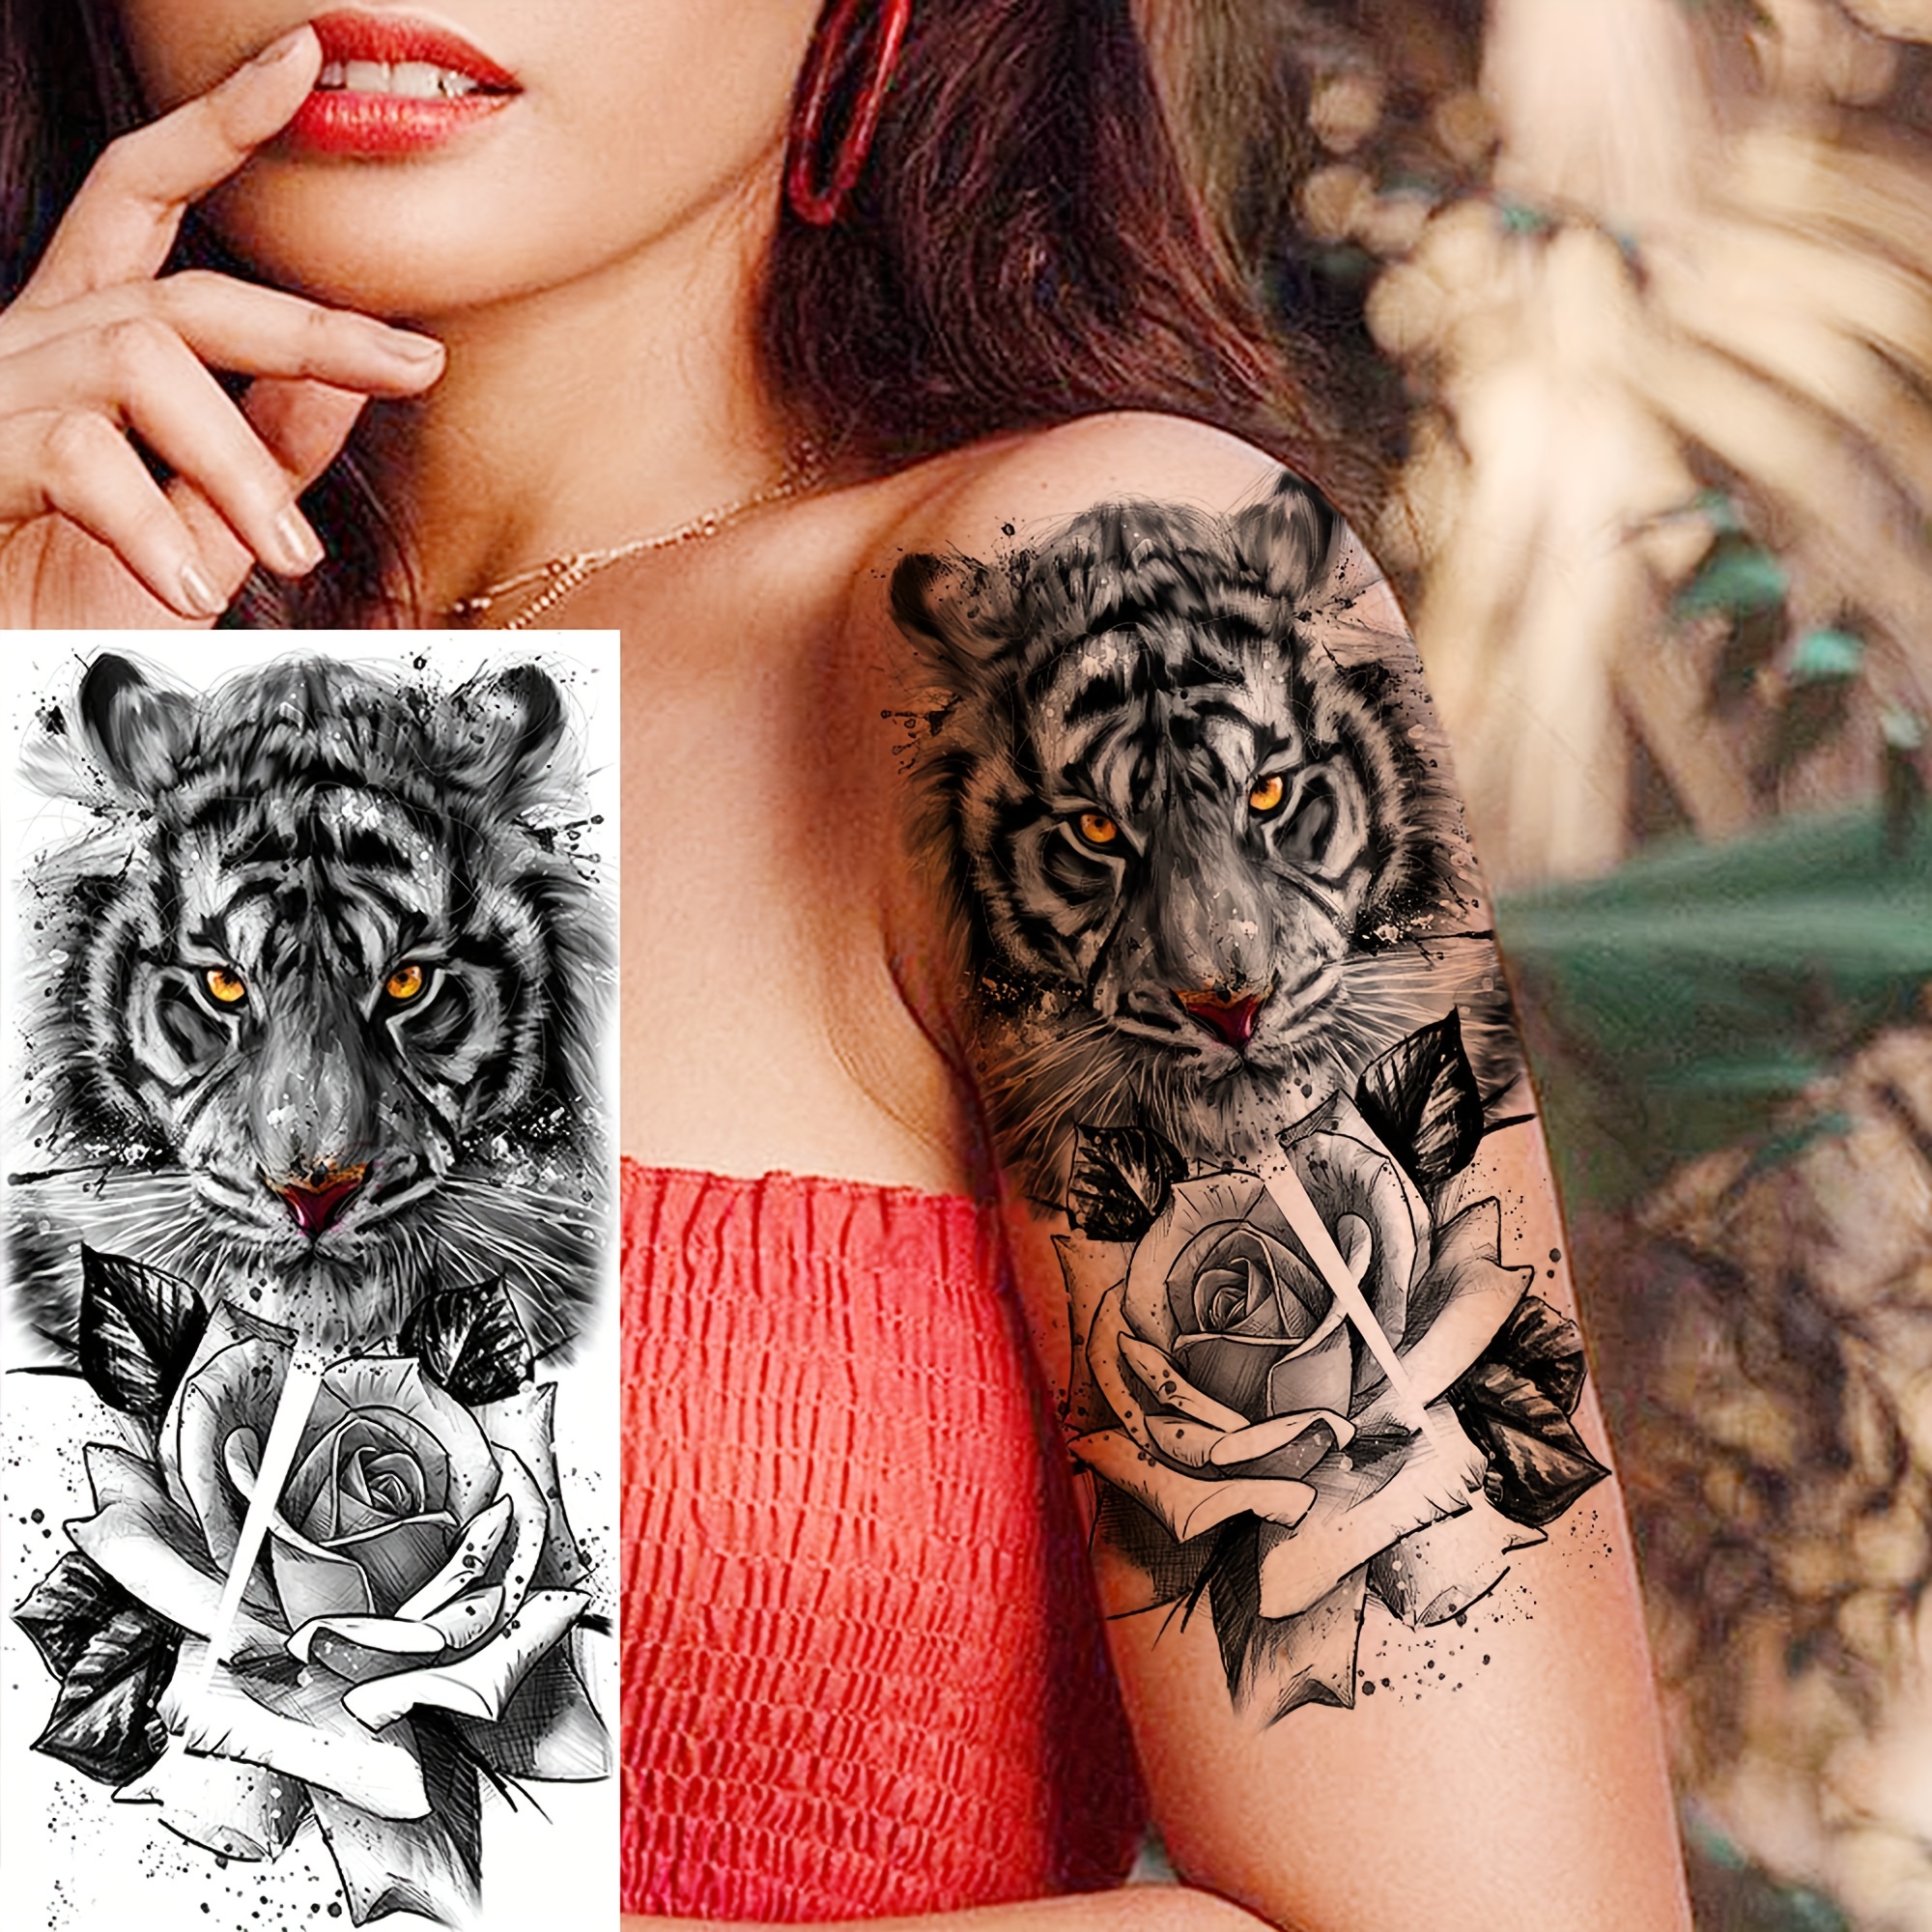 Tatuaggio temporaneo, 11 tatuaggi temporanei realistici Wildflower per le  donne. Disegno del tatuaggio artistico originale -  Italia